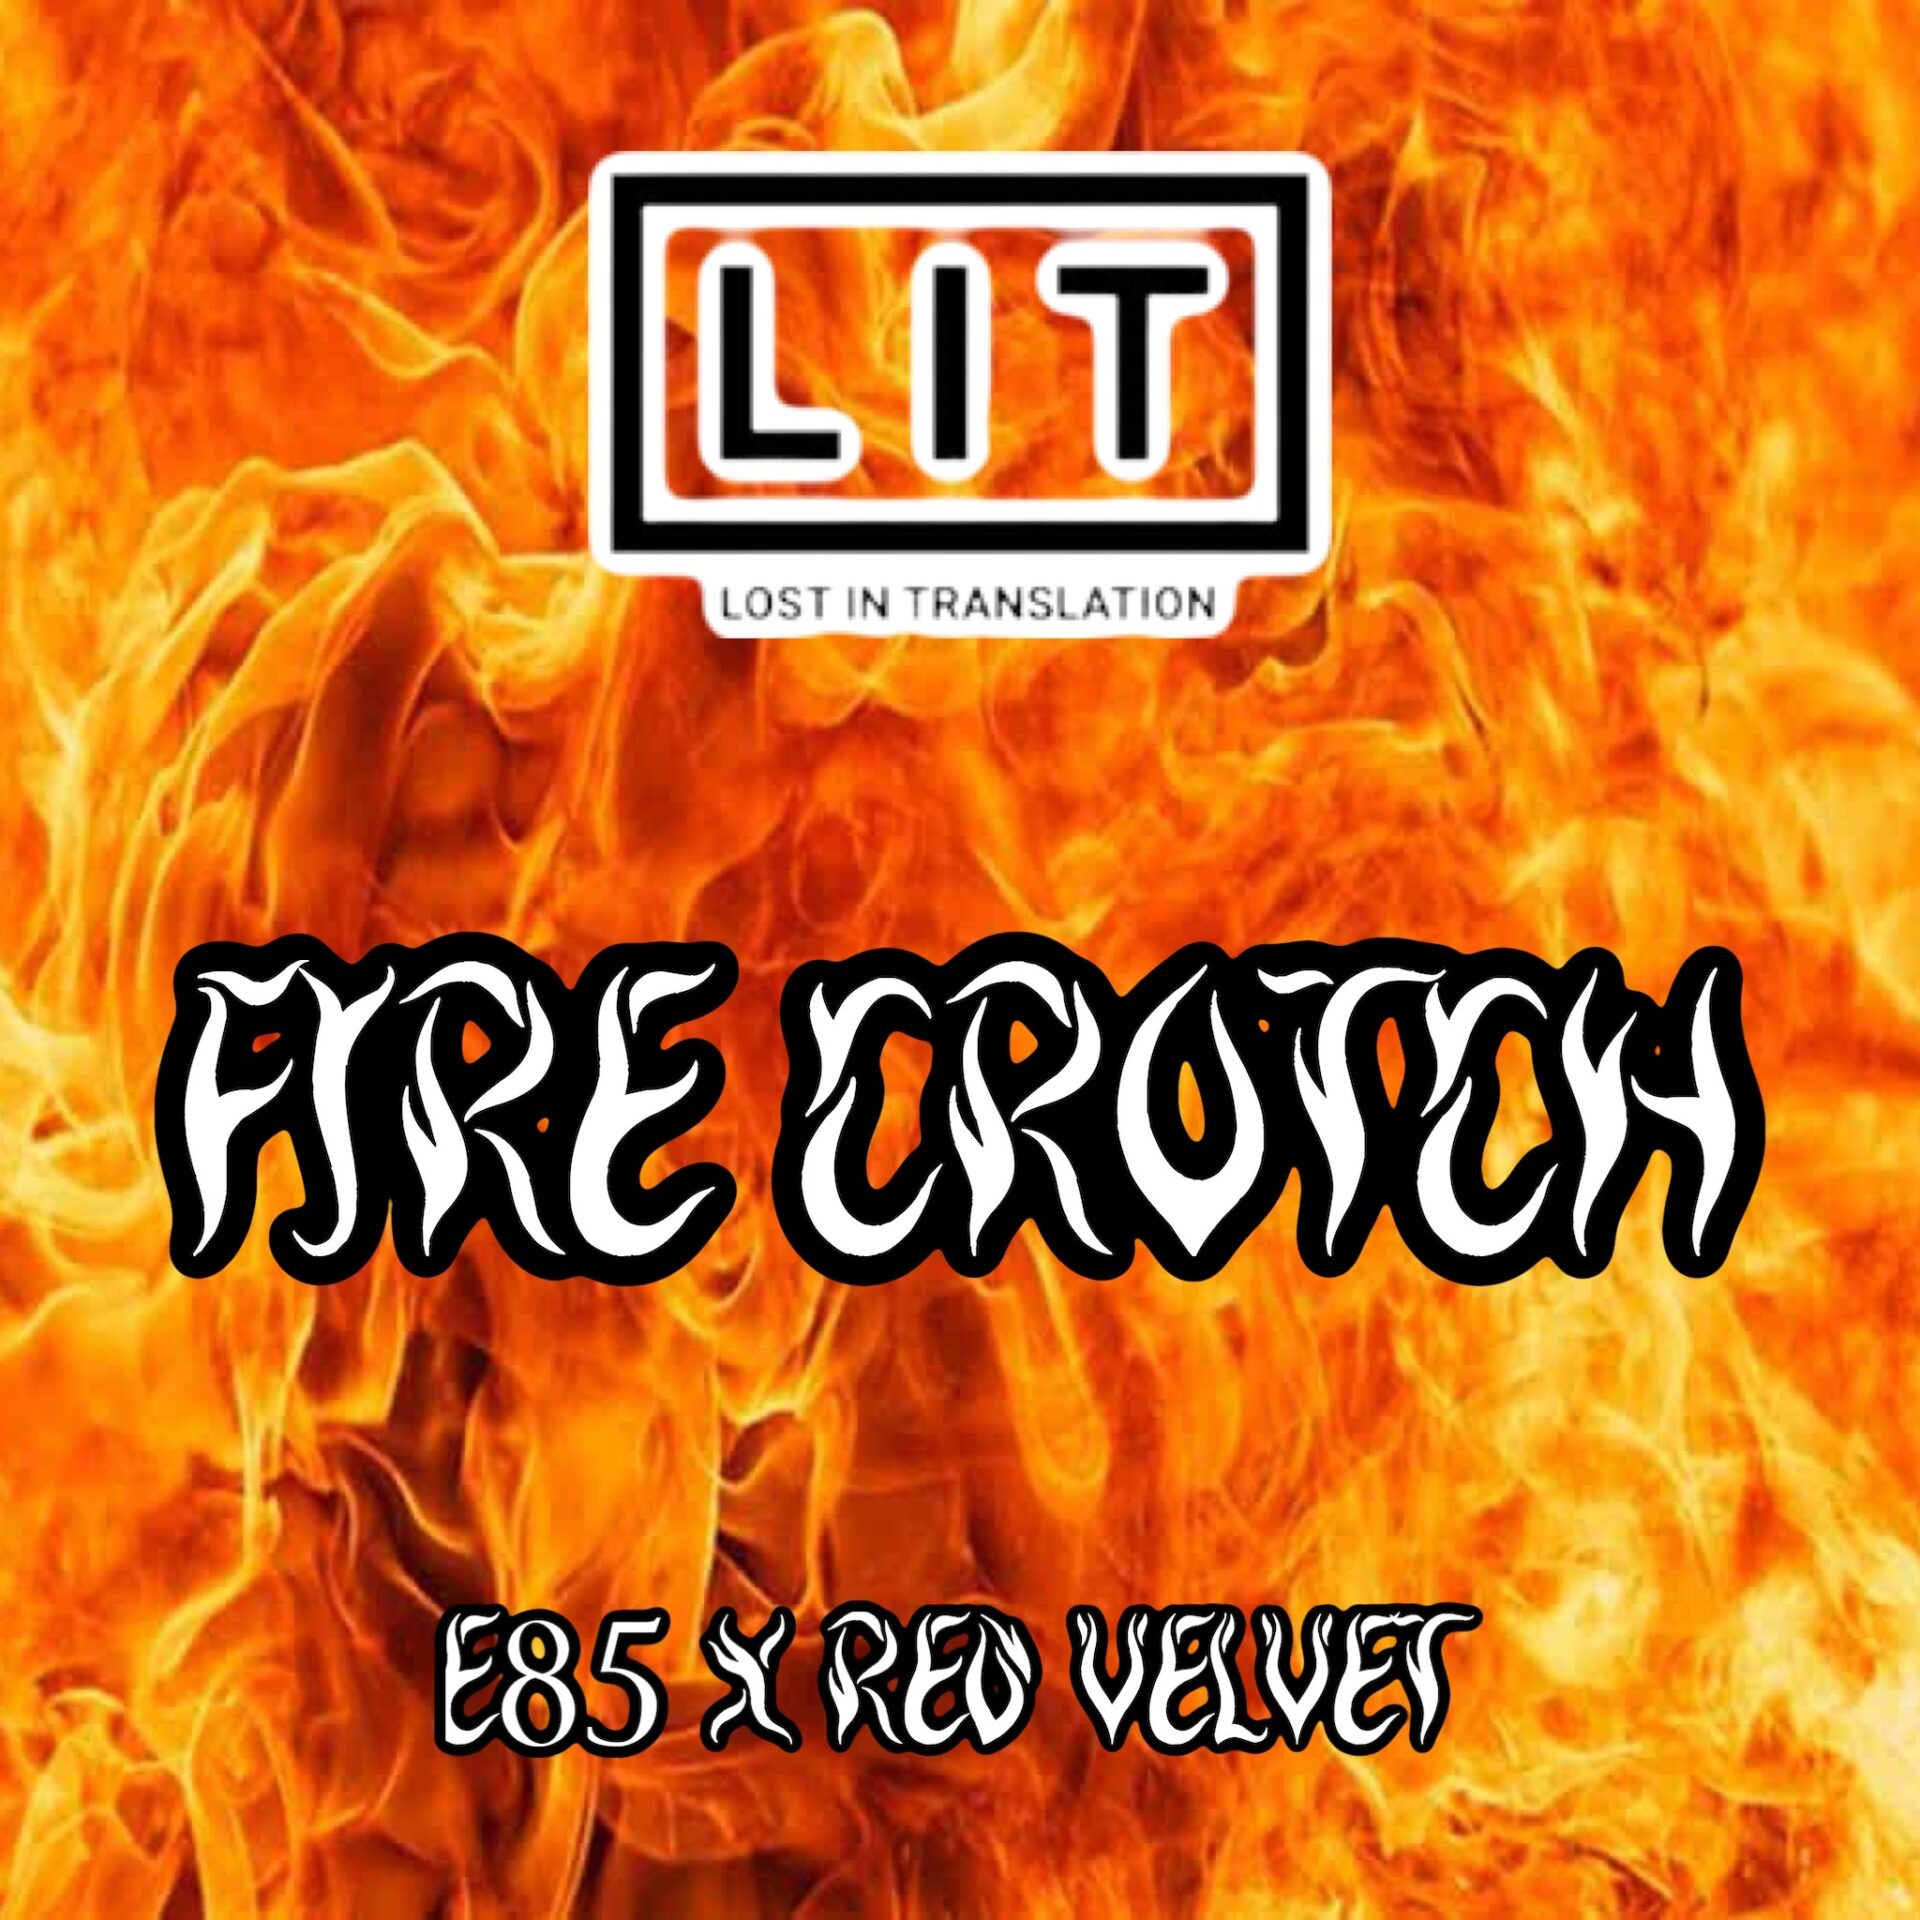 Fire Crotch Pics